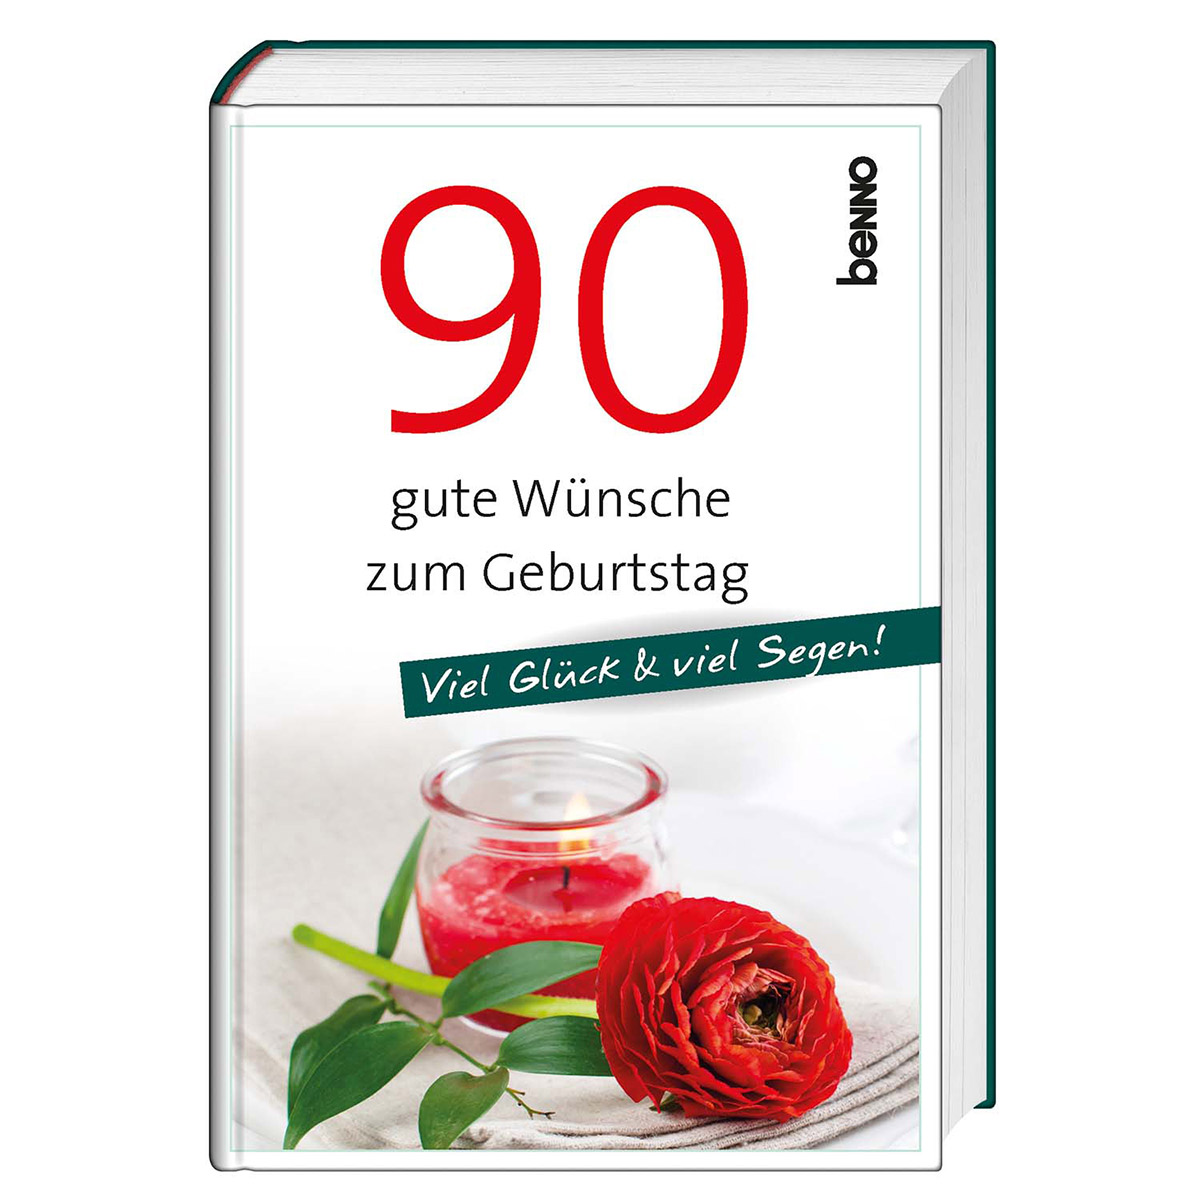 90 gute Wünsche zum Geburtstag - Cover